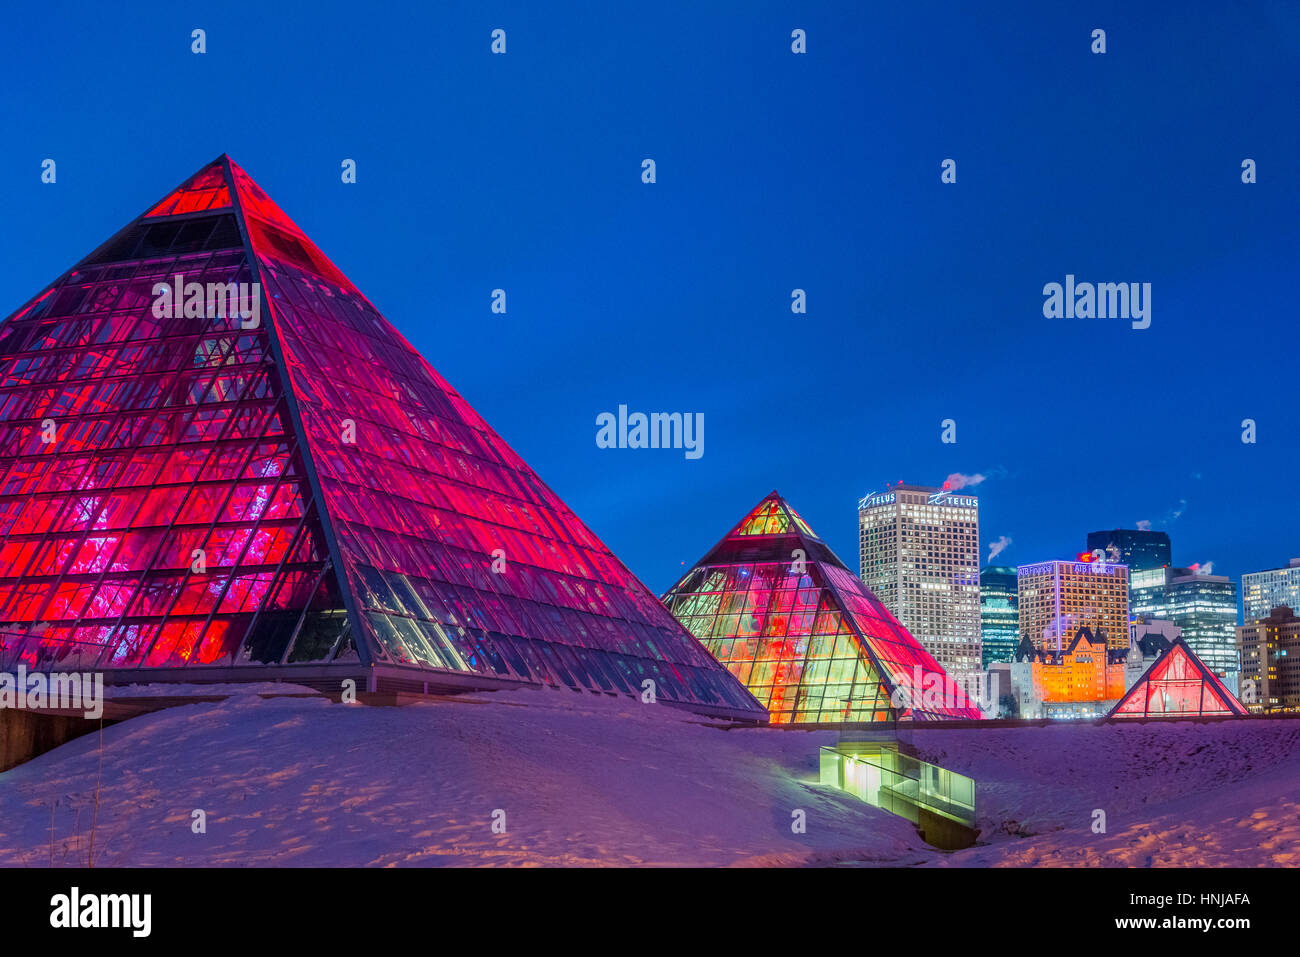 Edmonton skyline and illuminated Muttart Conservatory pyramids, a Botanical Garden in Edmonton, Alberta, Canada Stock Photo